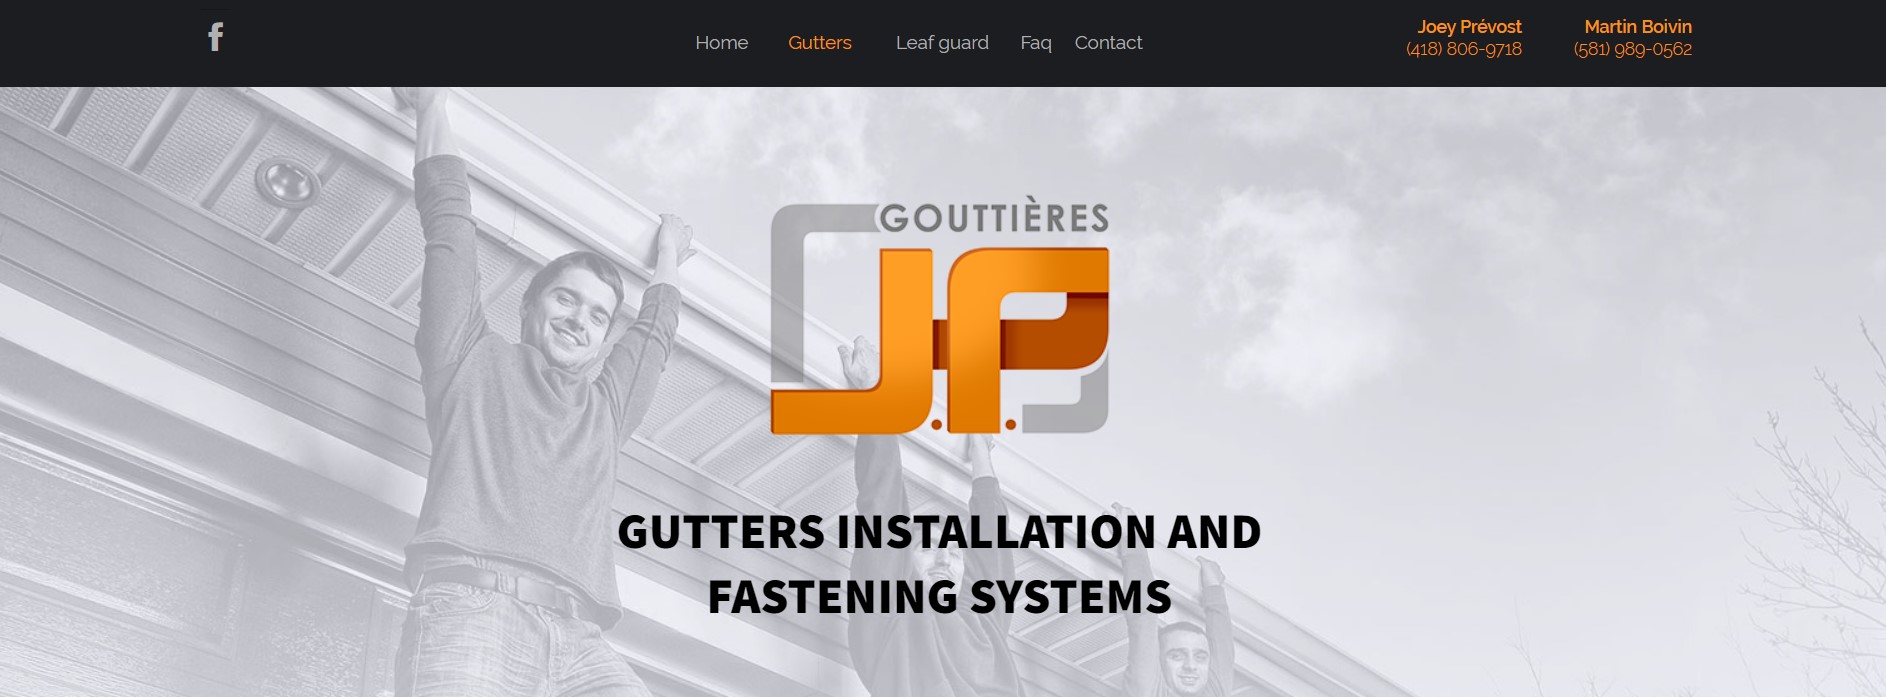 gouttieres jp gutter installation service in quebec